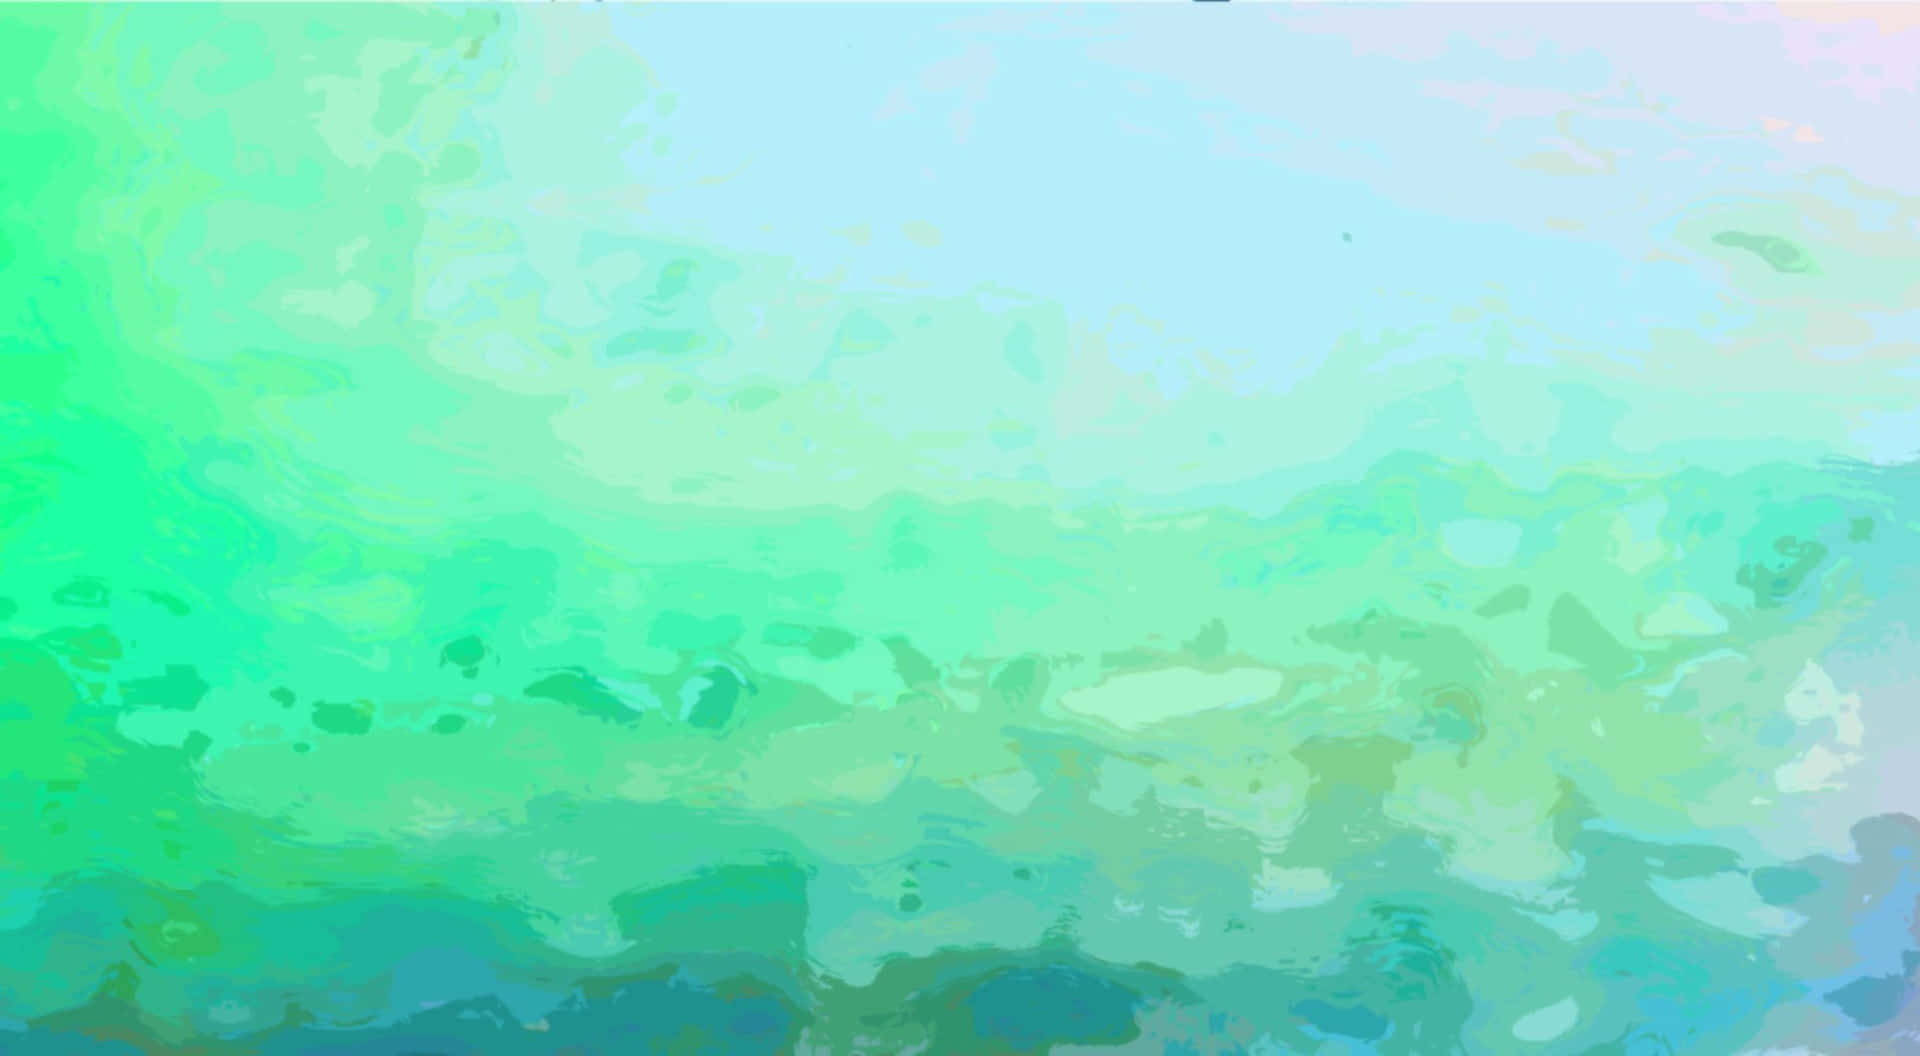 Rosablush og skovgrønt kommer sammen for at skabe et smukt æstetisk udtryk. Wallpaper